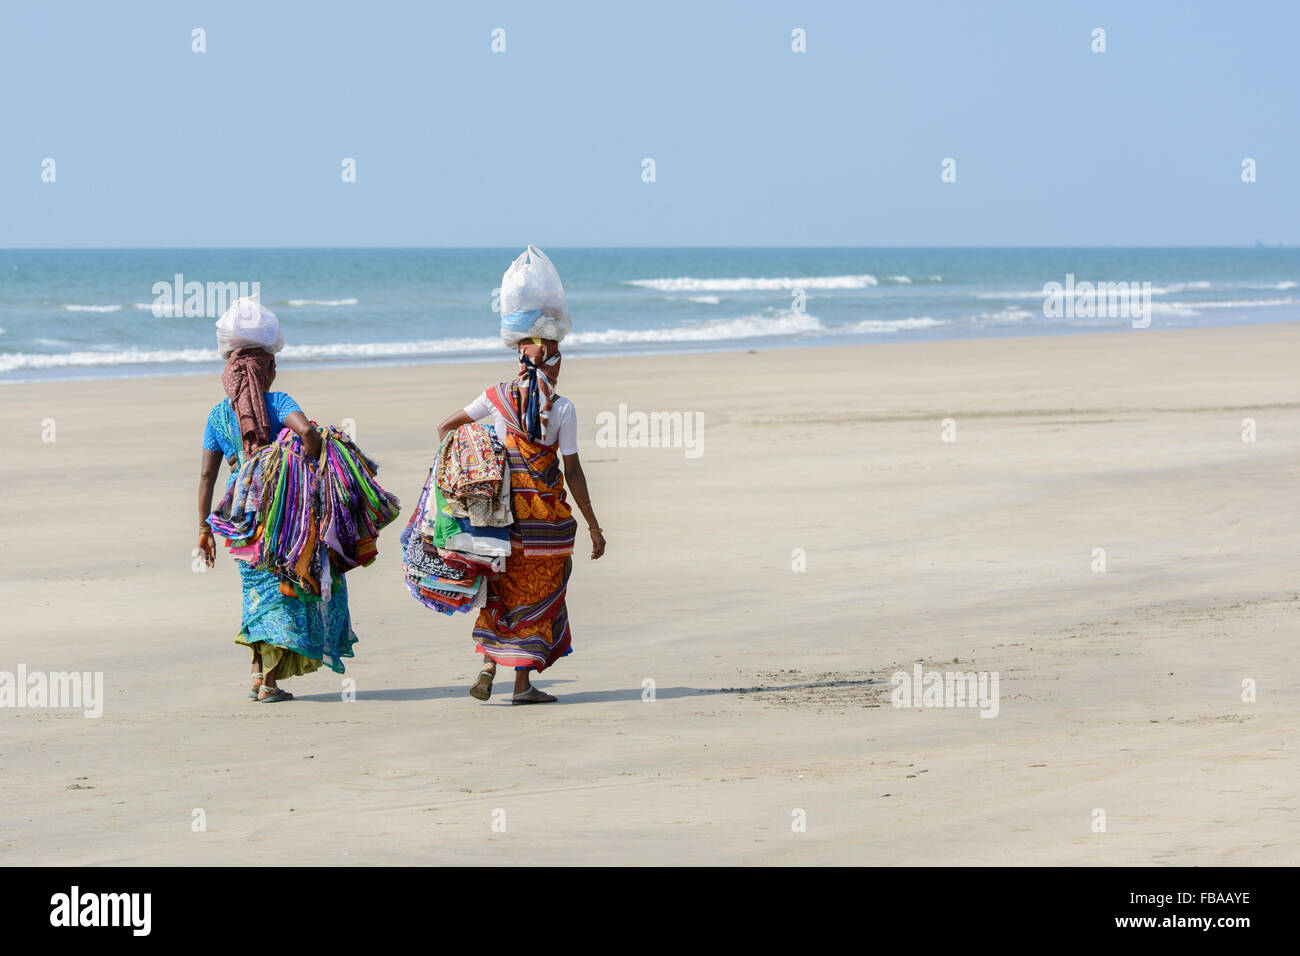 Deux femmes indiennes vendant des sarongs et tissus marche sur une plage vide, plage de Mandrem, Nord de Goa, Inde Banque D'Images